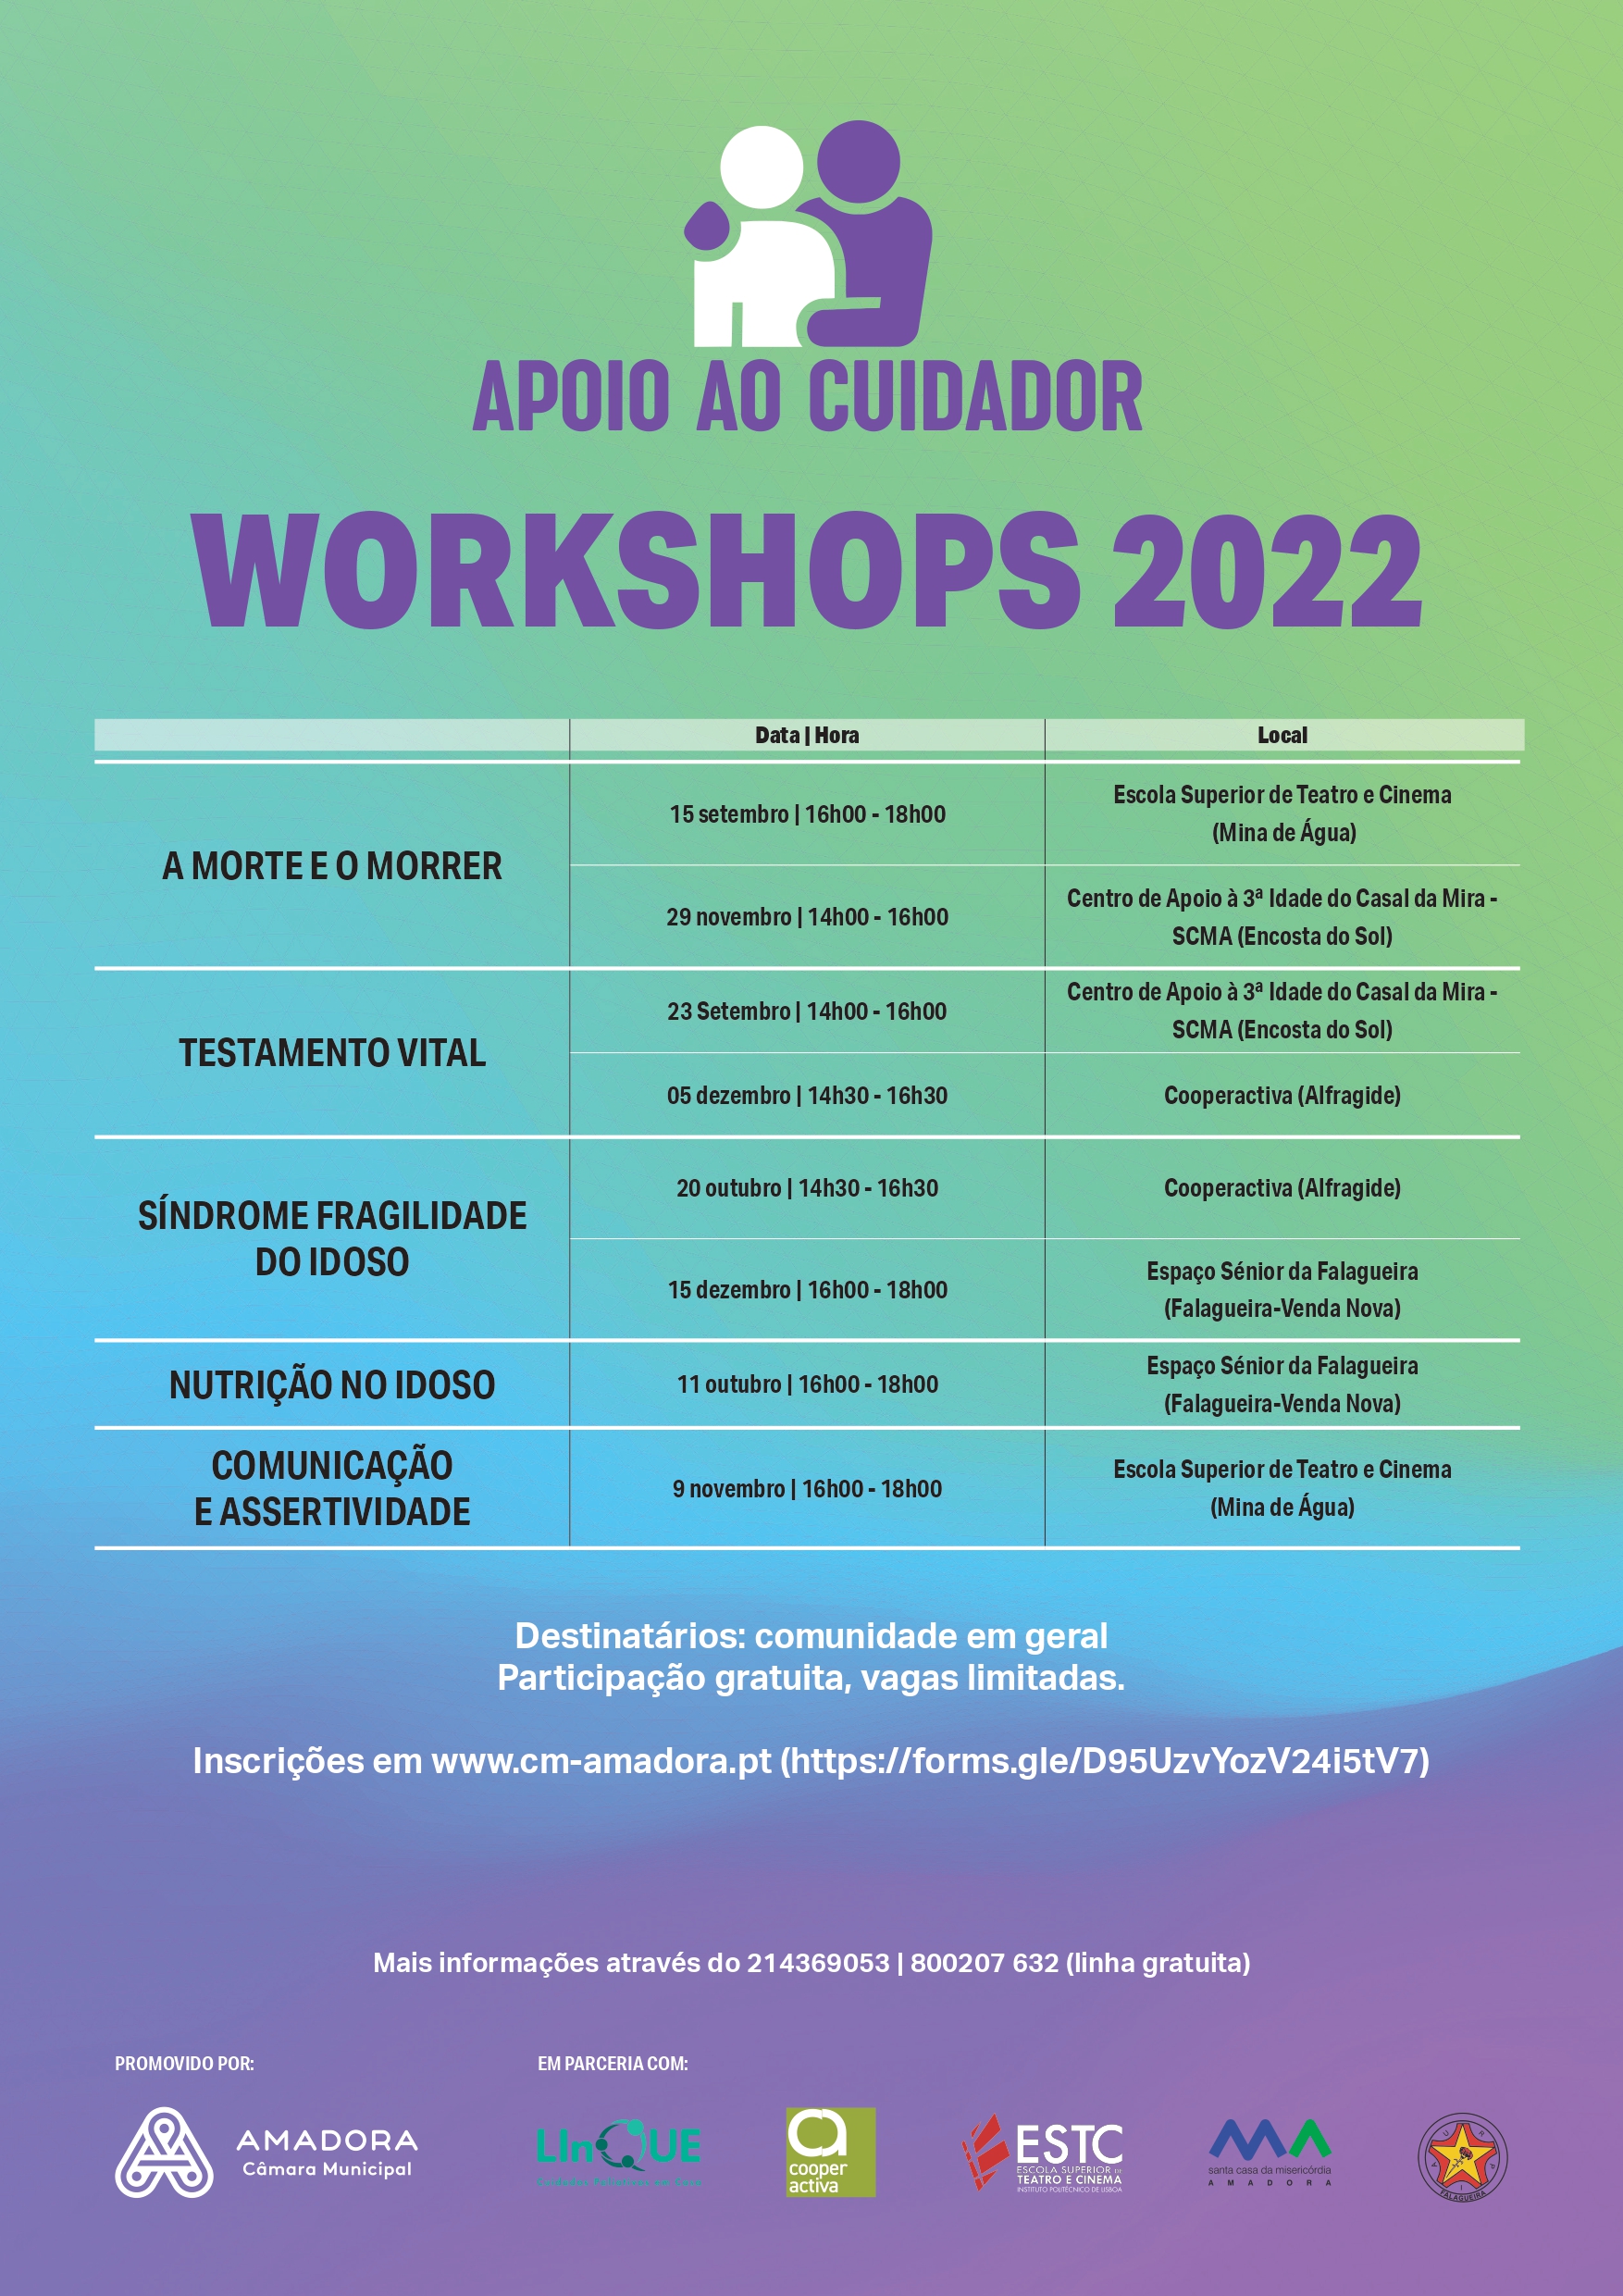 WORKSHOP APOIO CUIDADOR 2022